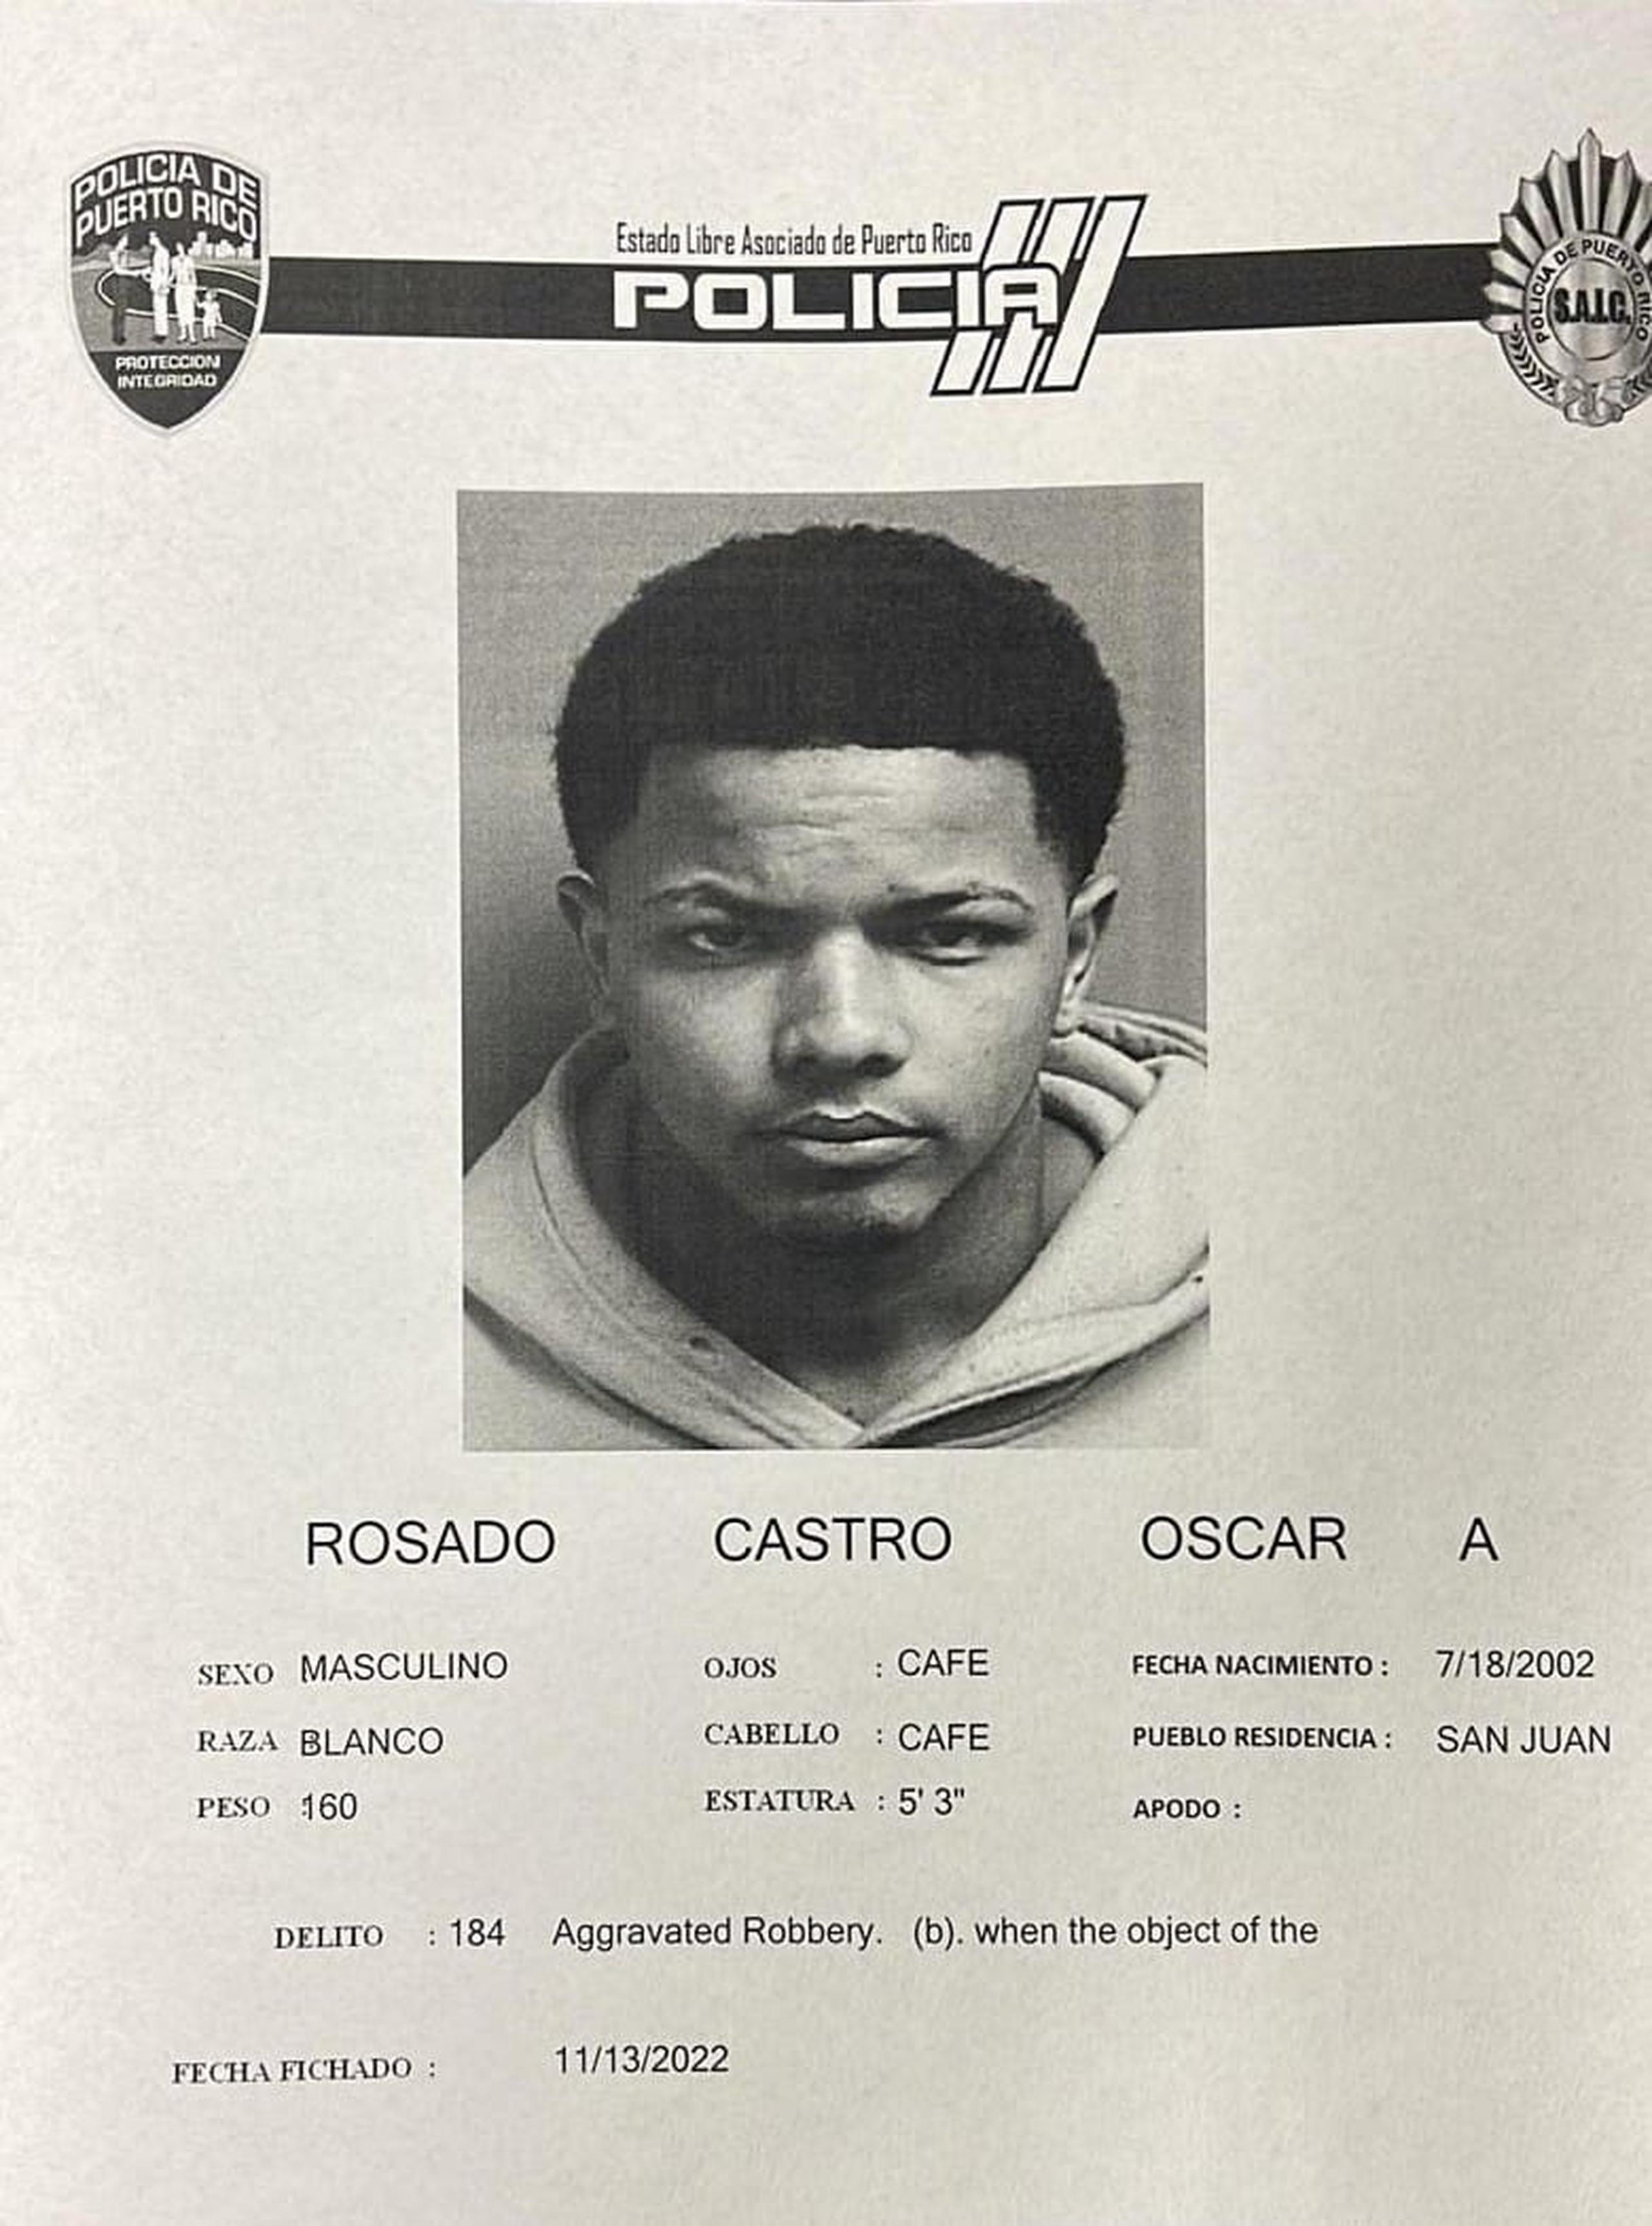 Oscar A. Rosado Castro fue acusado junto a otro individuo por violación al artículo 6.05 de la Ley de Armas (Portación, Transportación o Uso de Armas de Fuego sin Licencia) y al artículo 190 del Código Penal (robo agravado).